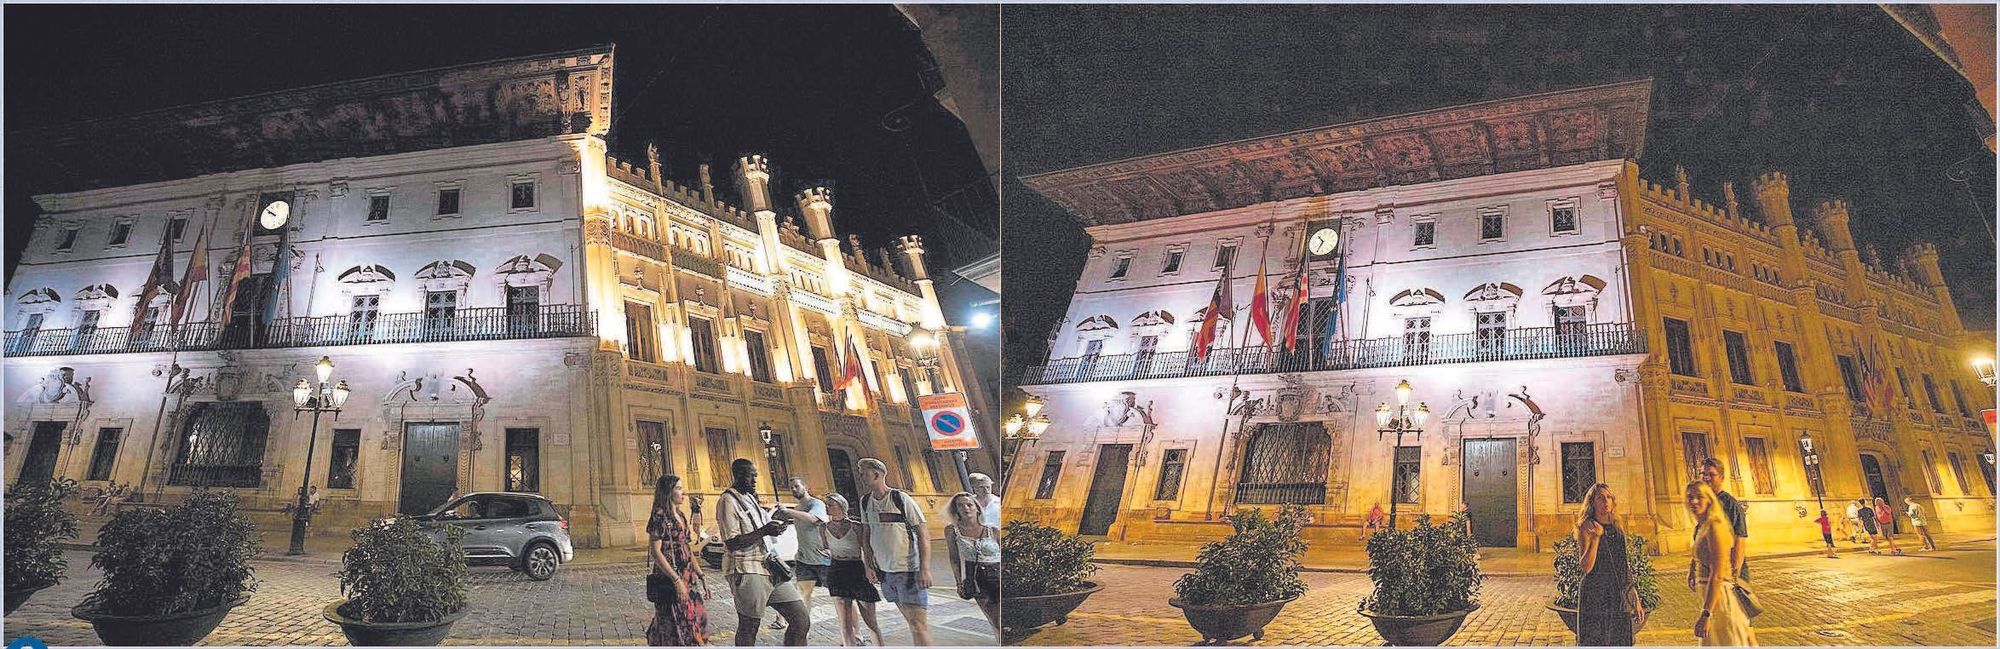 Am Dienstag hatten das Rathaus von Palma und der Sitz des Inselrats noch ihre Lichter an, am Mittwoch (rechts) nur noch das Rathaus.